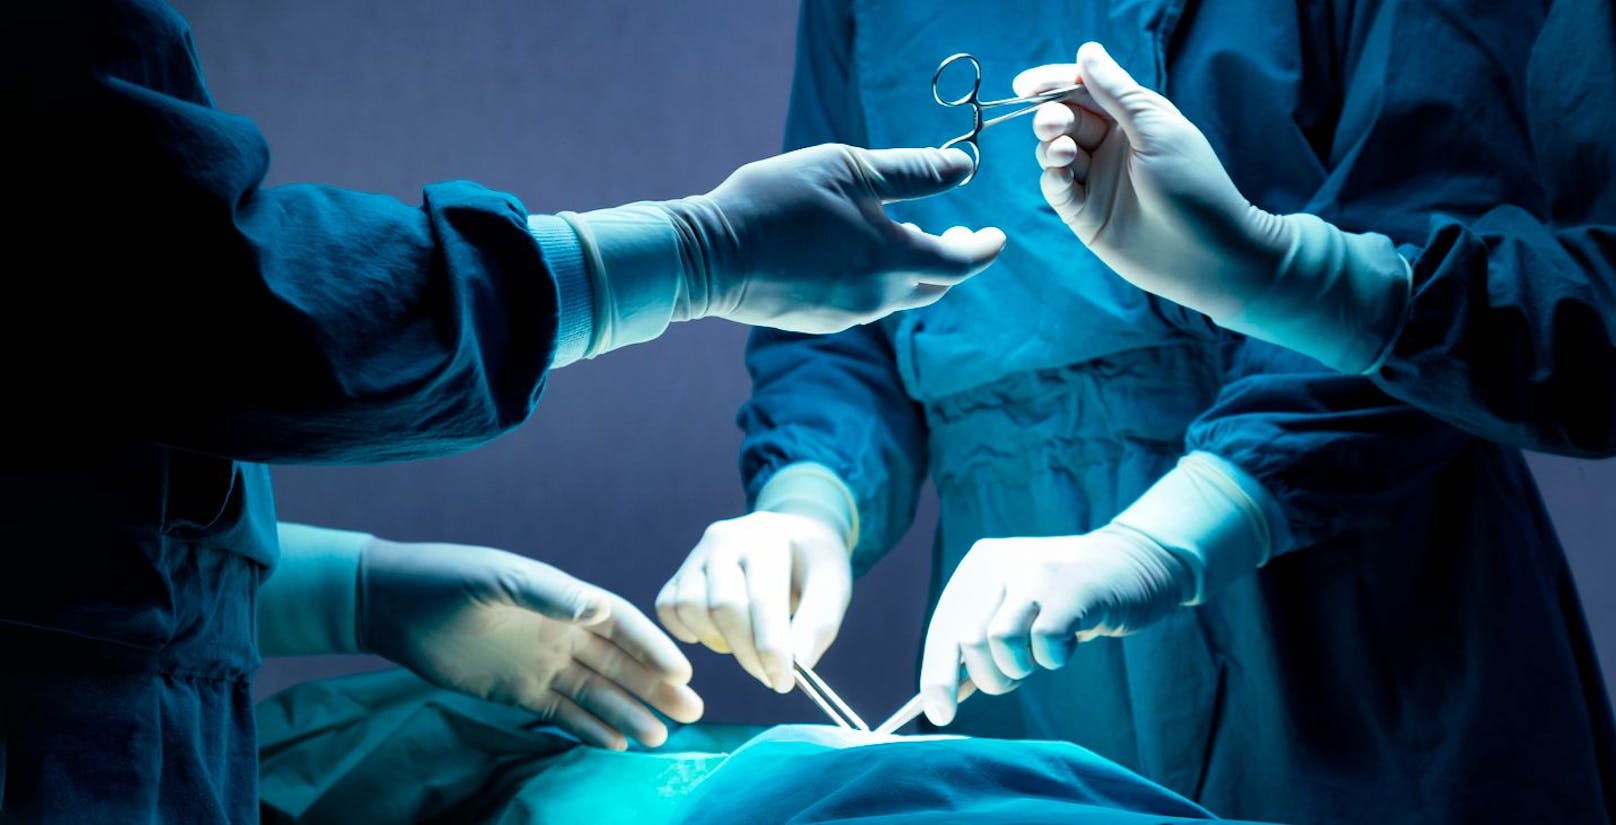 Penisfrakturen erfordern in der Regel eine Operation. Der Chirurg schließt den Riss in den Schwellkörpern. Die Hauptziele der Behandlung sind die Wiederherstellung oder der Erhalt der Erektionsfähigkeit und die Erhaltung der Harnfunktion.